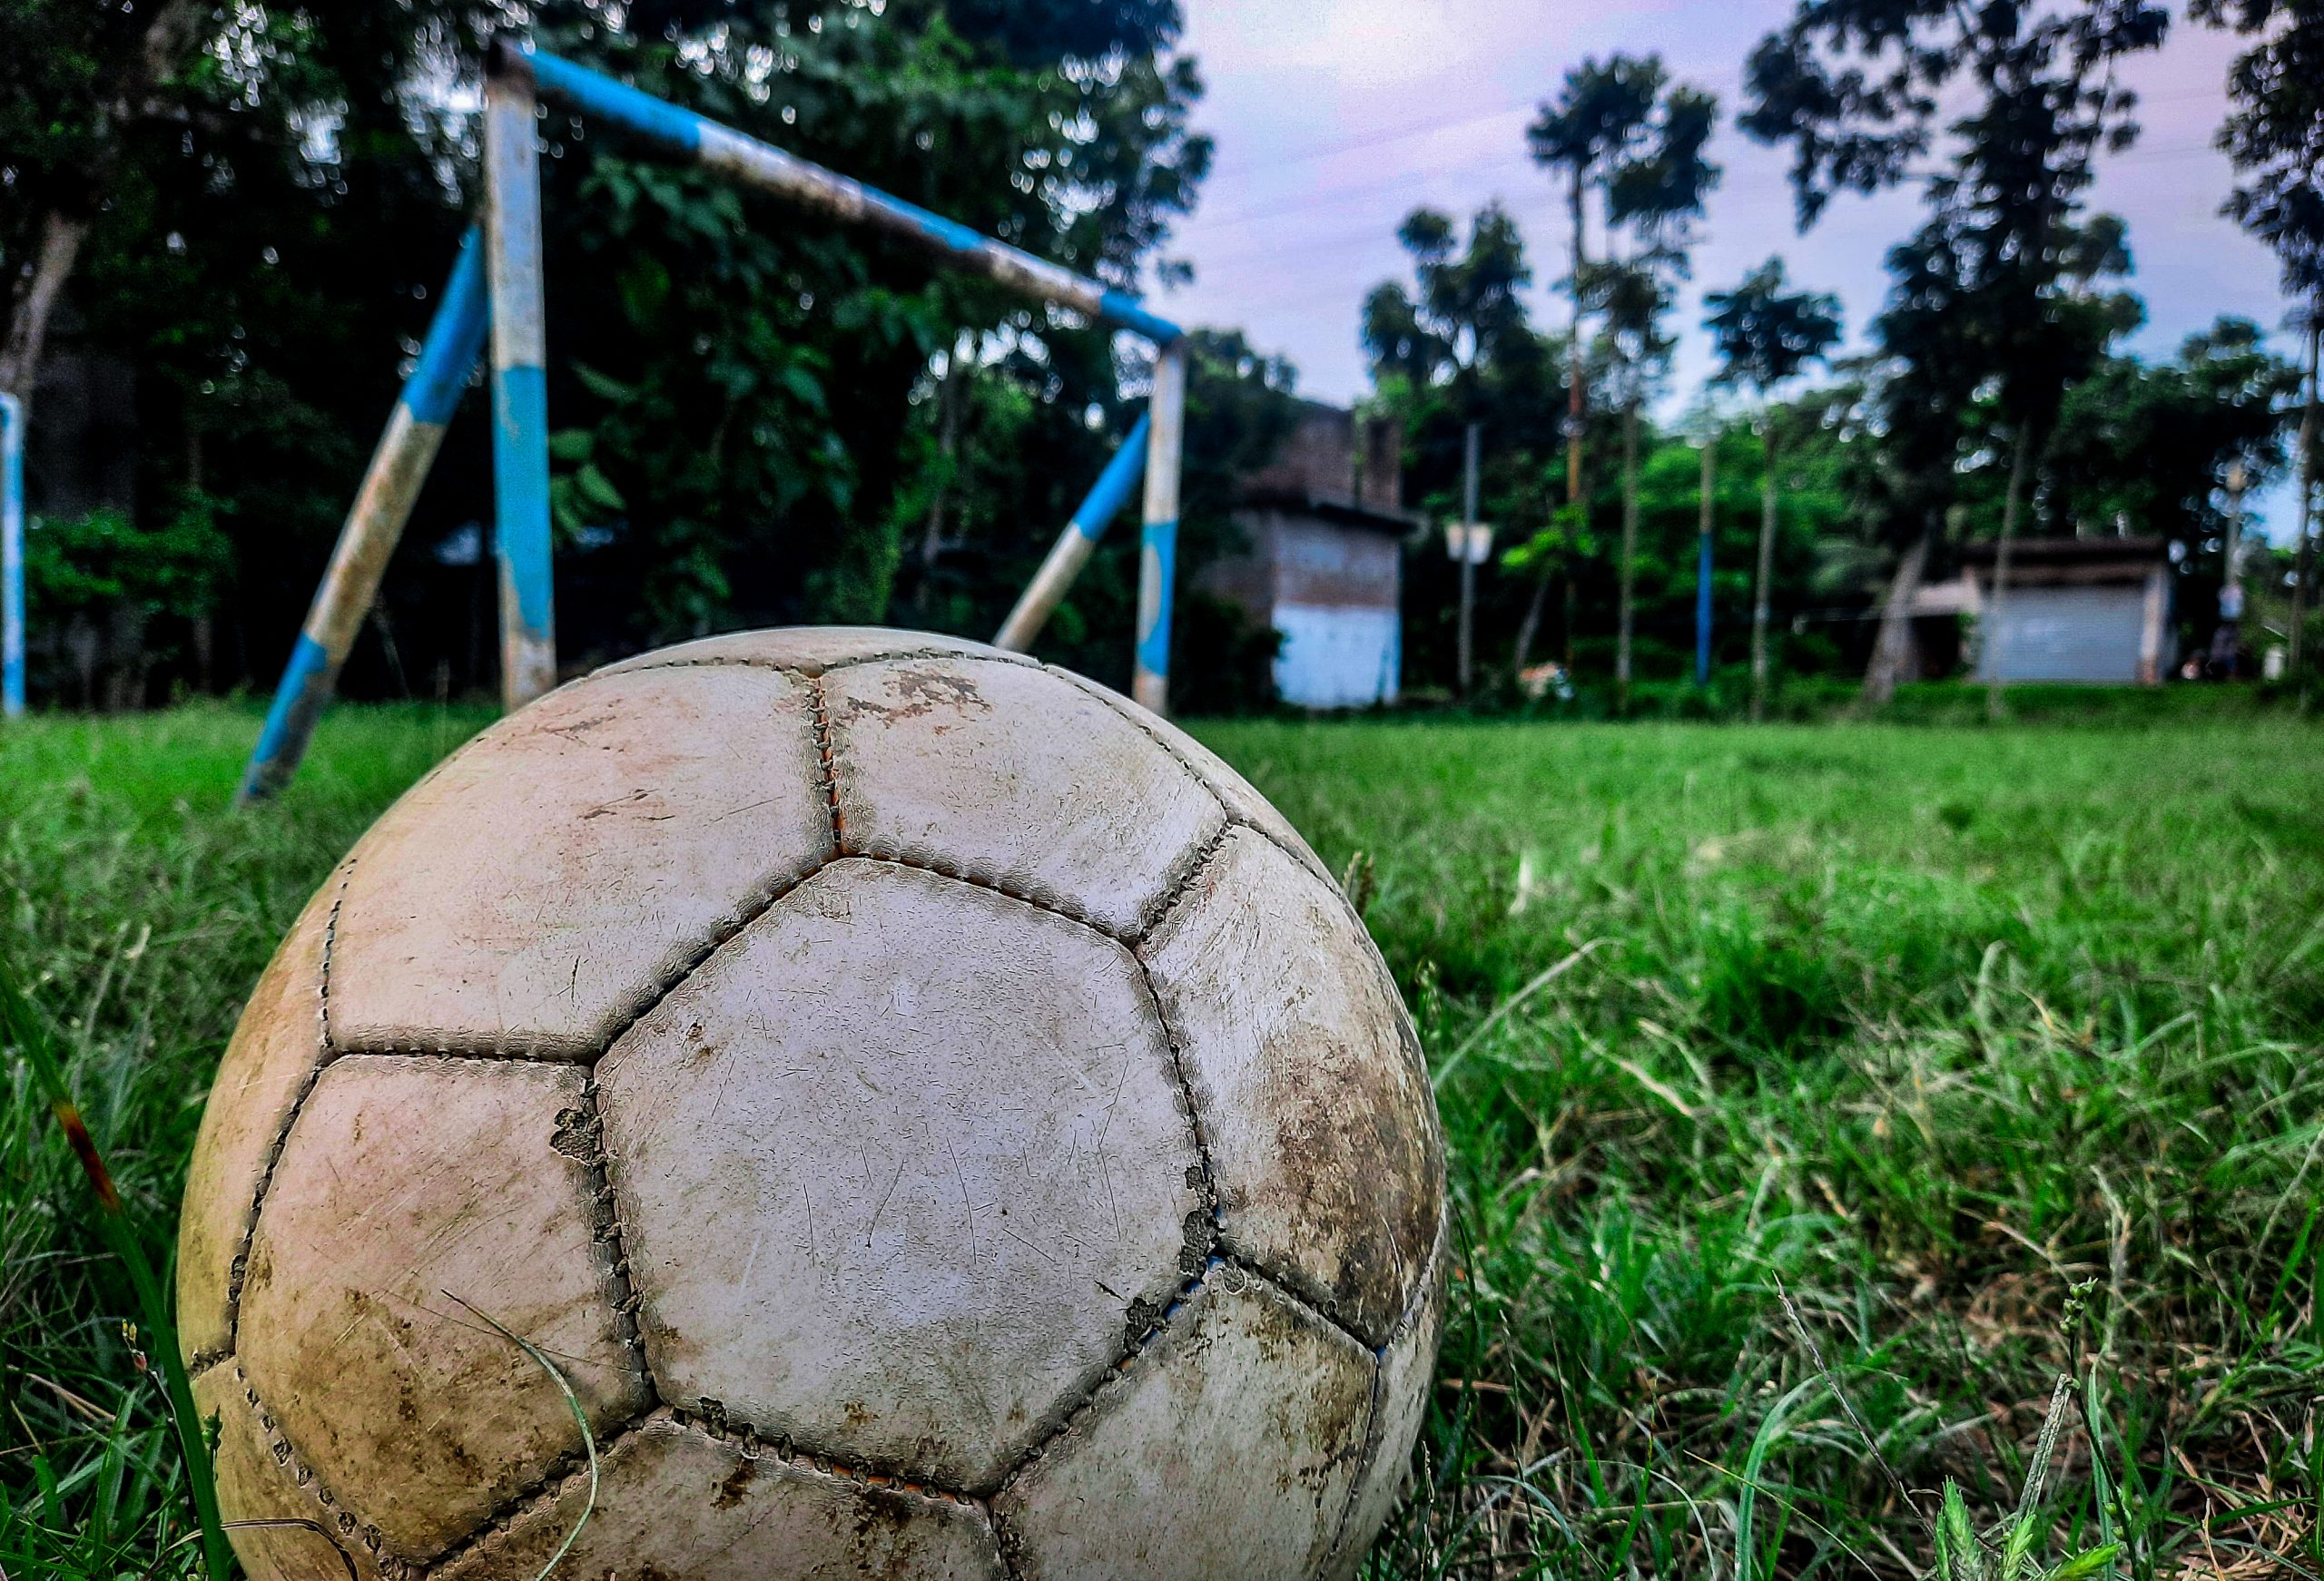 Football beside goalpost